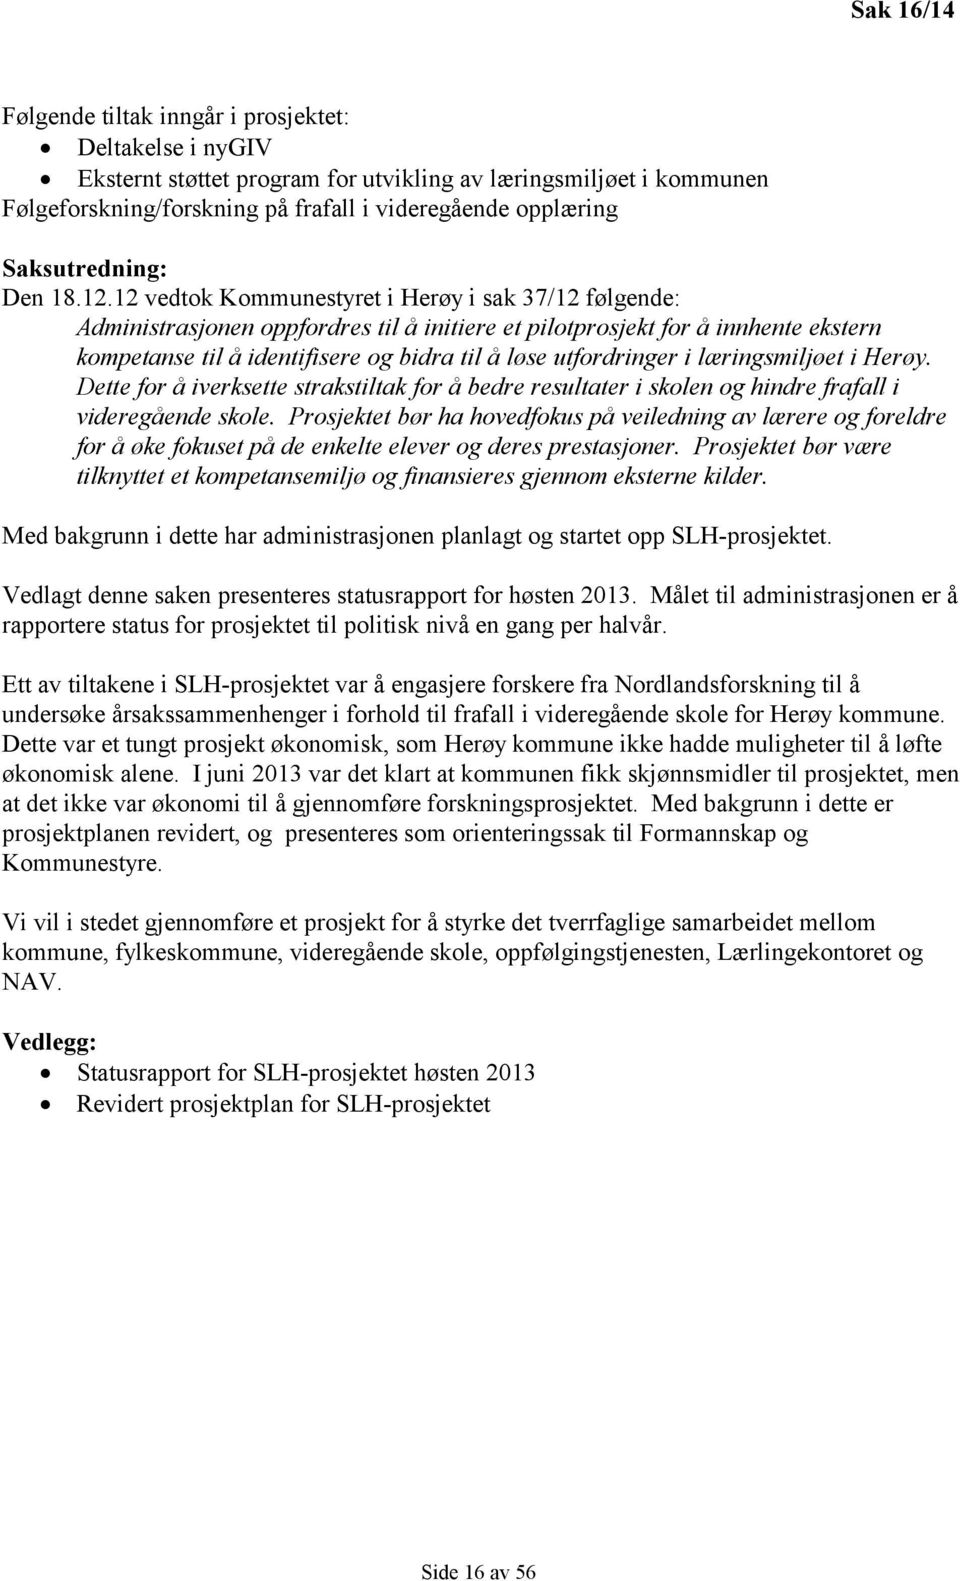 12 vedtok Kommunestyret i Herøy i sak 37/12 følgende: Administrasjonen oppfordres til å initiere et pilotprosjekt for å innhente ekstern kompetanse til å identifisere og bidra til å løse utfordringer